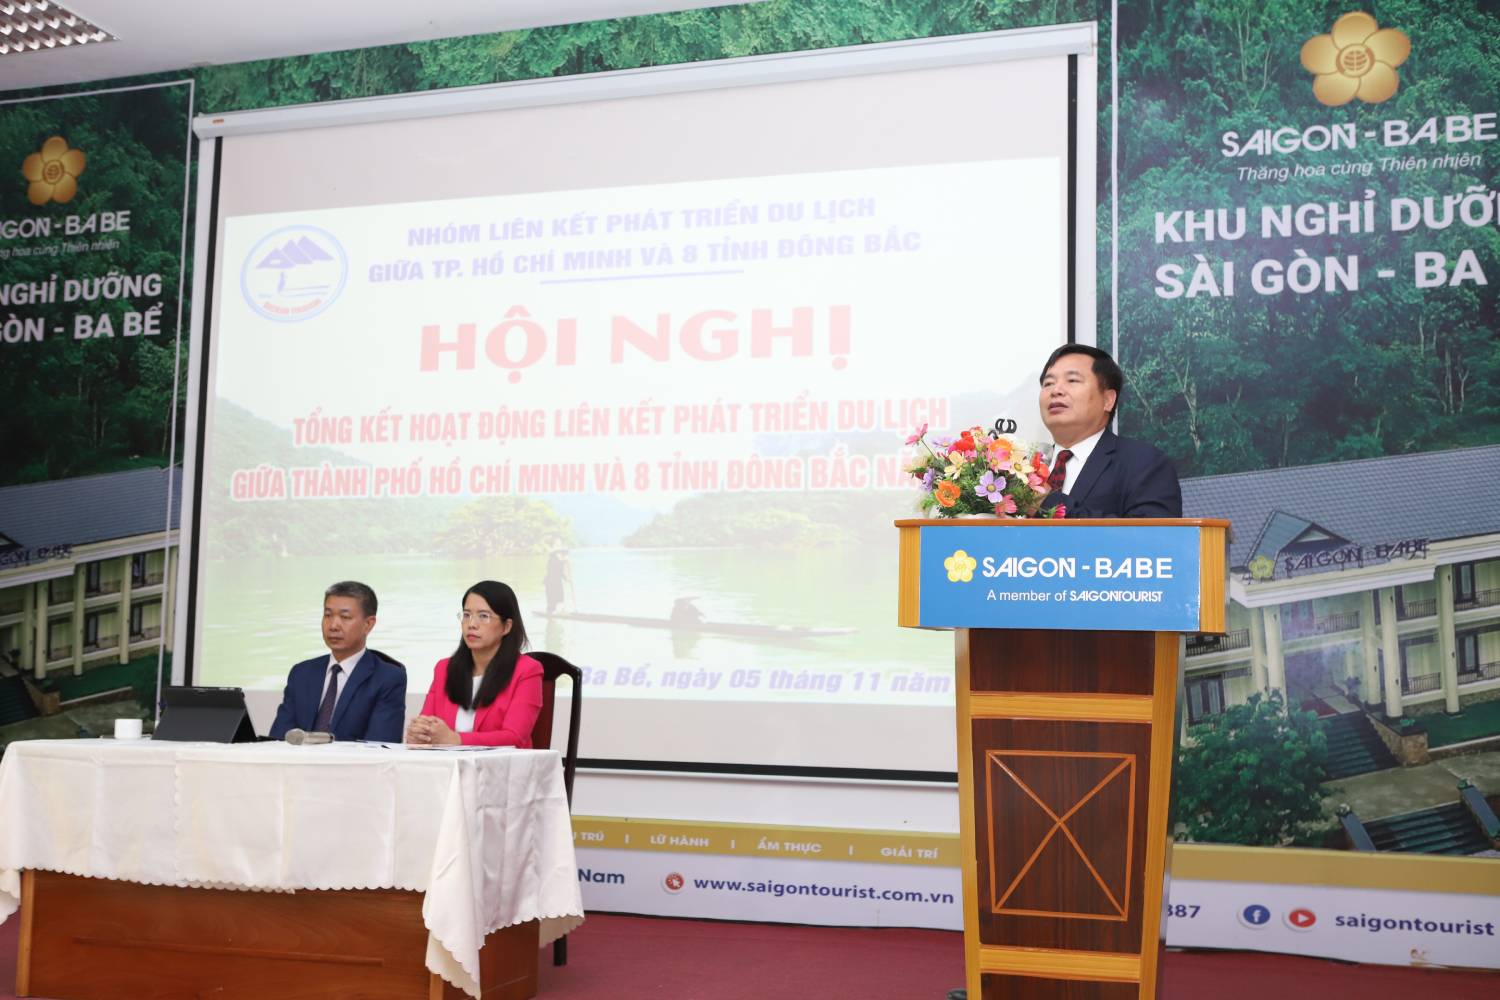 Tiến sĩ Nguyễn Anh Tuấn, Viện trưởng Viện Nghiên cứu Phát triển du lịch phatr biểu tại Hội nghị